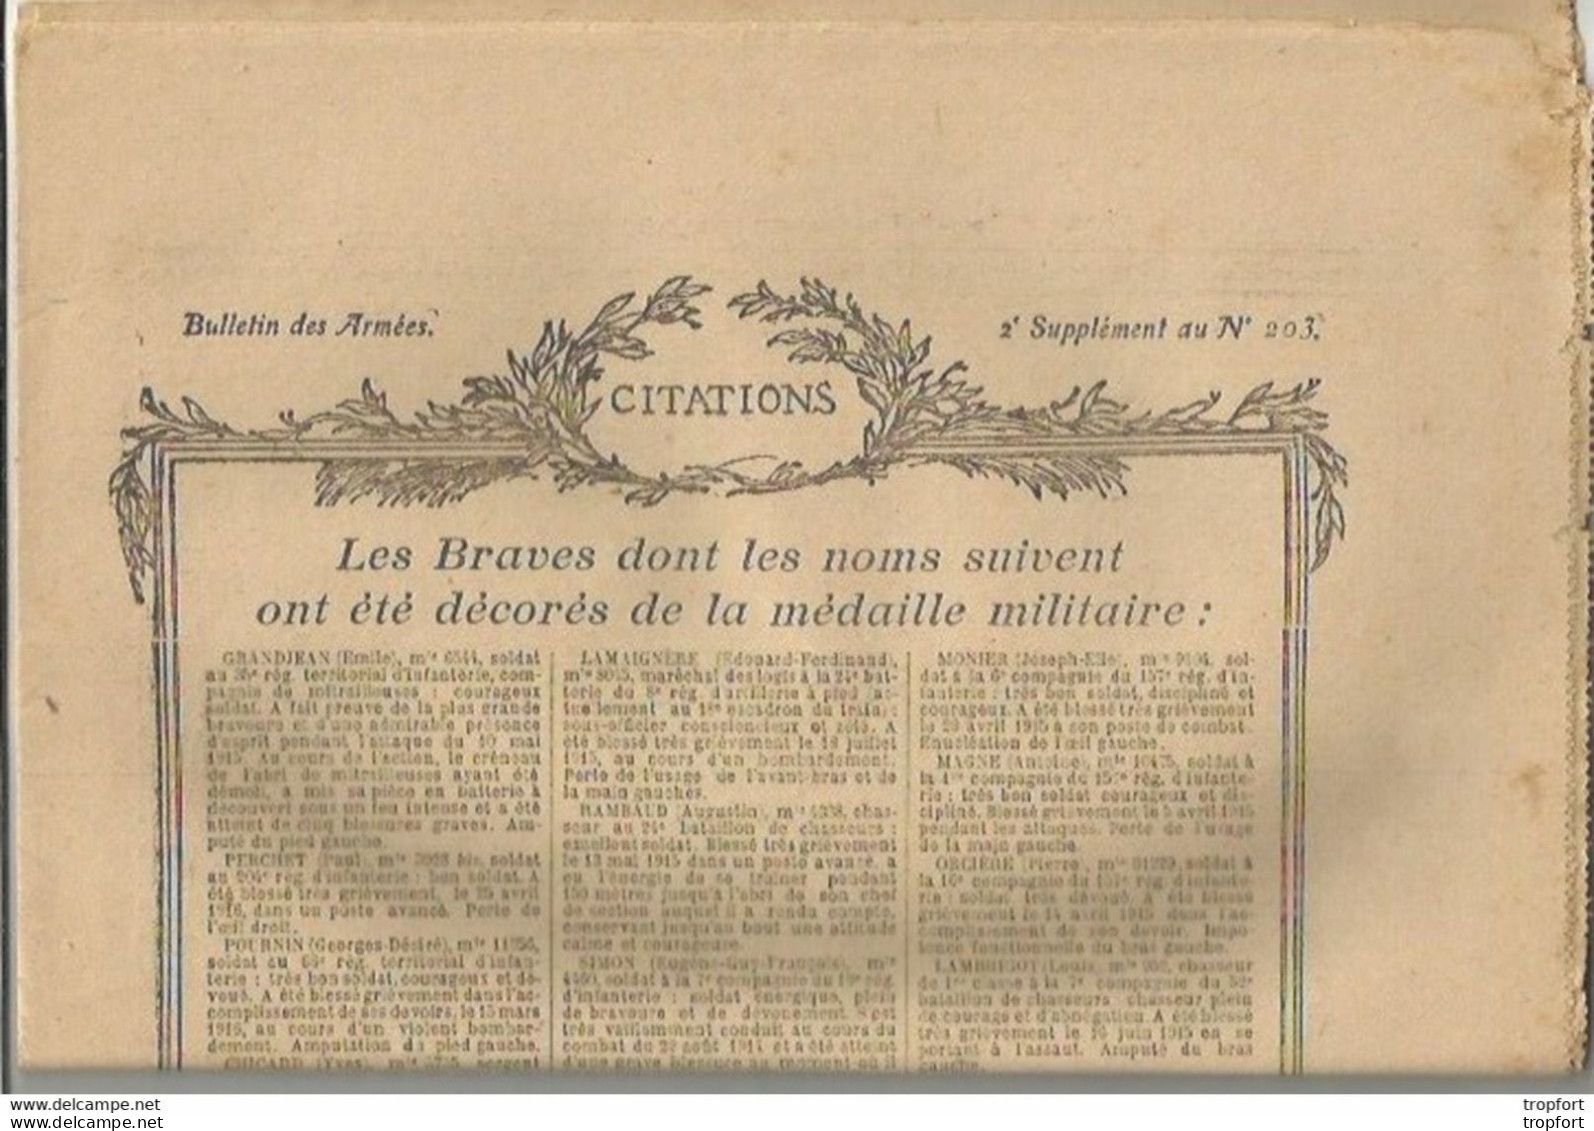 TH / Rare Journal BULLETIN DES ARMEES CITATIONS N°203 WW1 16 Pages MILITAIRES Citation 1914 1918 Guerre Bléssés - Informations Générales